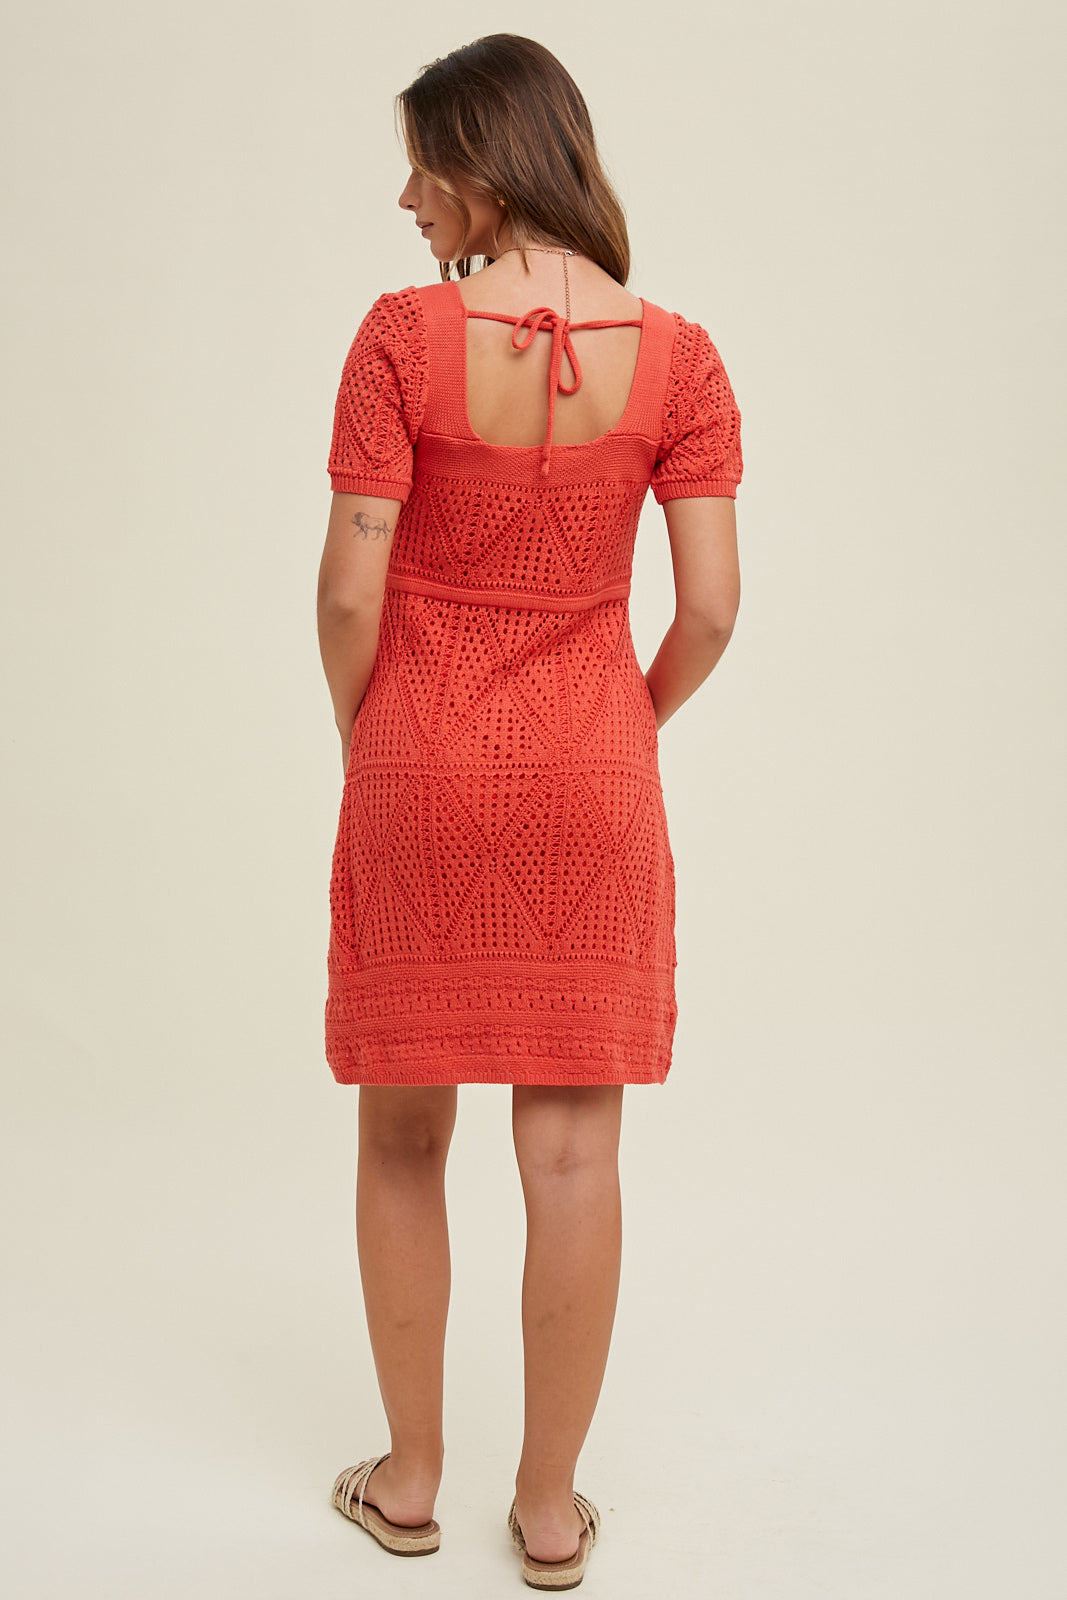 Gracie Crochet Mini Dress